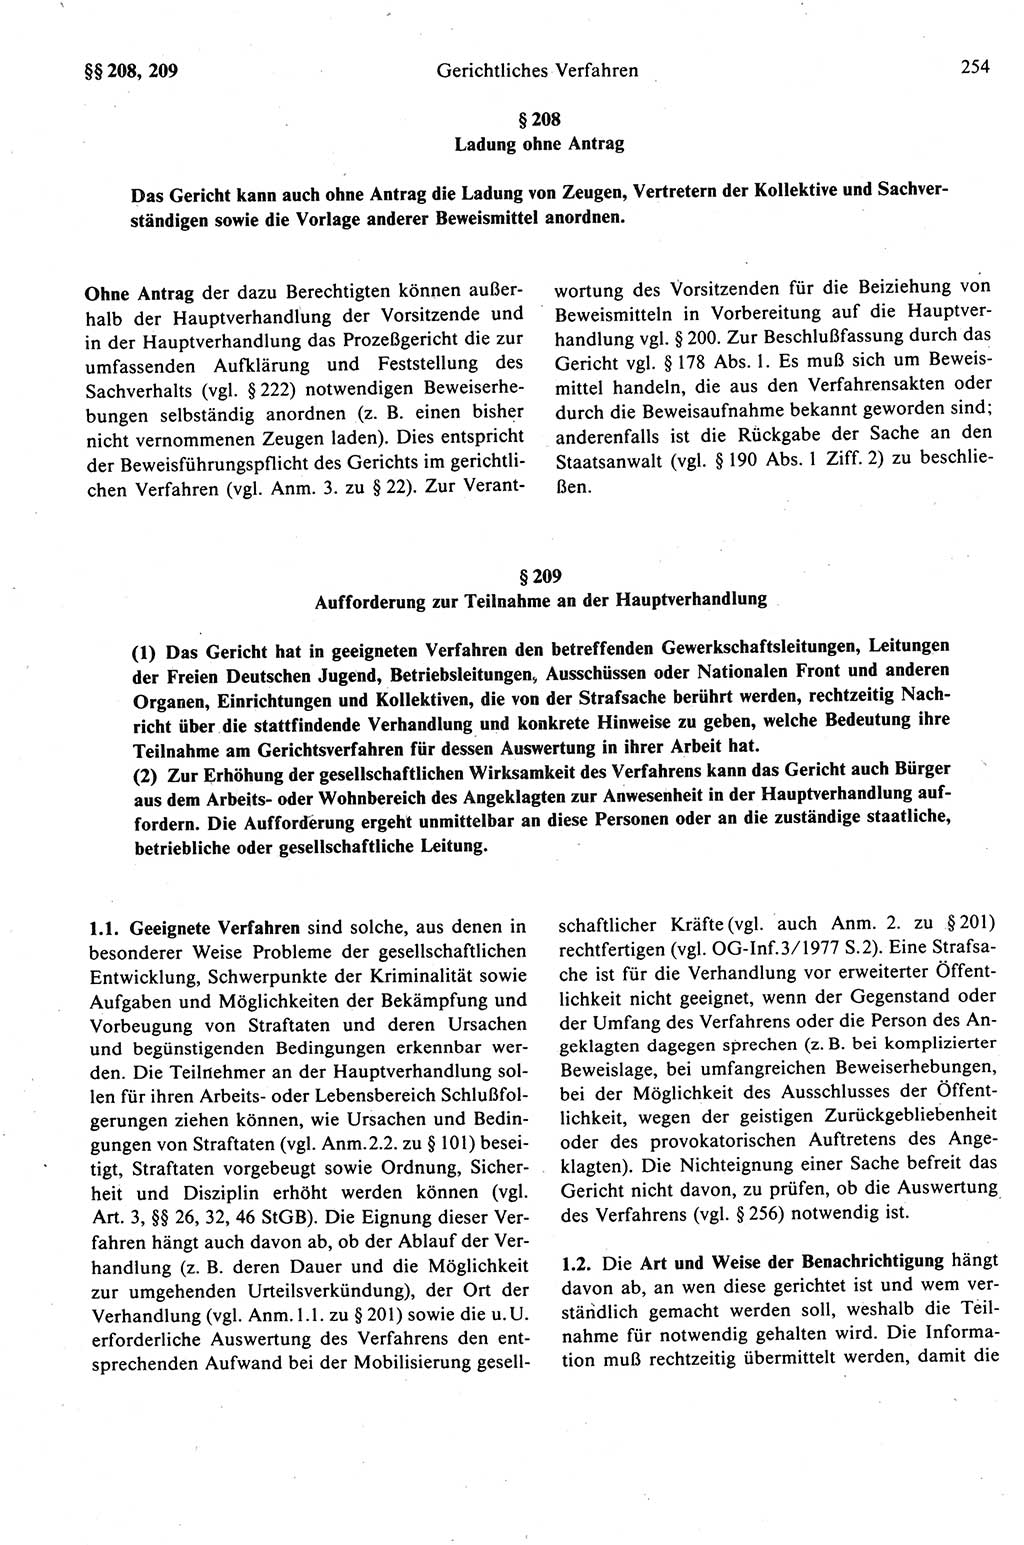 Strafprozeßrecht der DDR (Deutsche Demokratische Republik), Kommentar zur Strafprozeßordnung (StPO) 1989, Seite 254 (Strafprozeßr. DDR Komm. StPO 1989, S. 254)